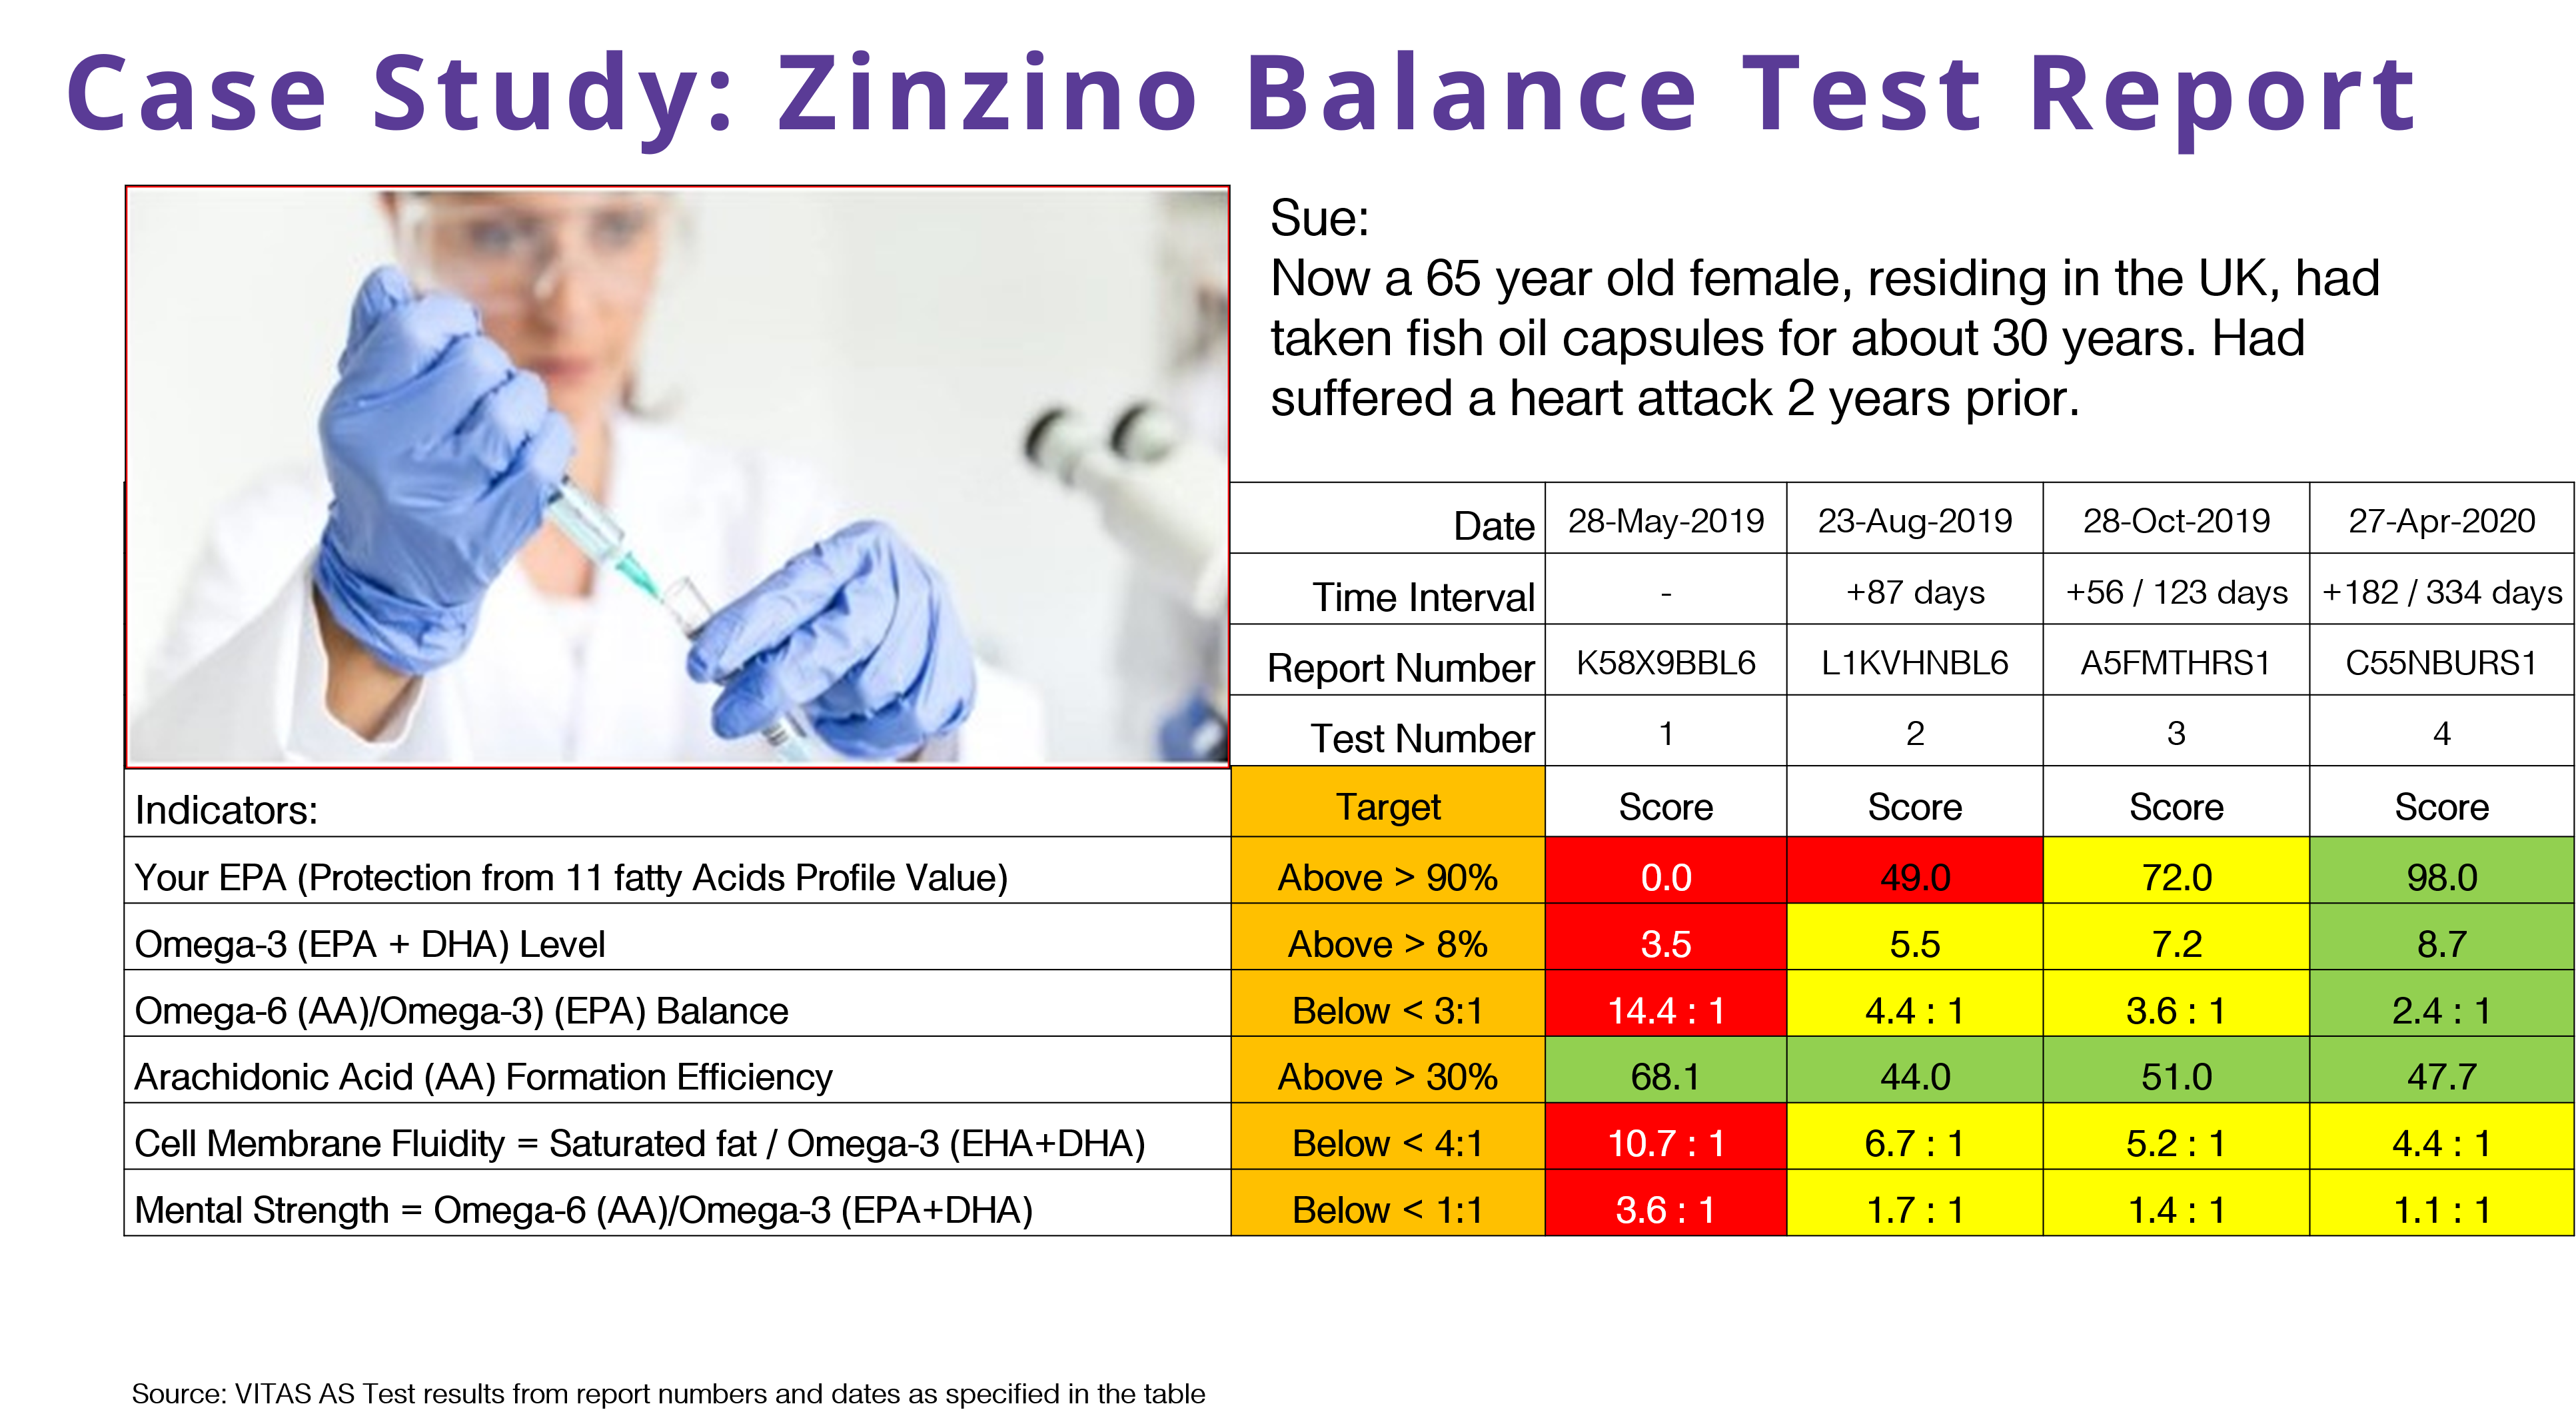 Zinzino test results